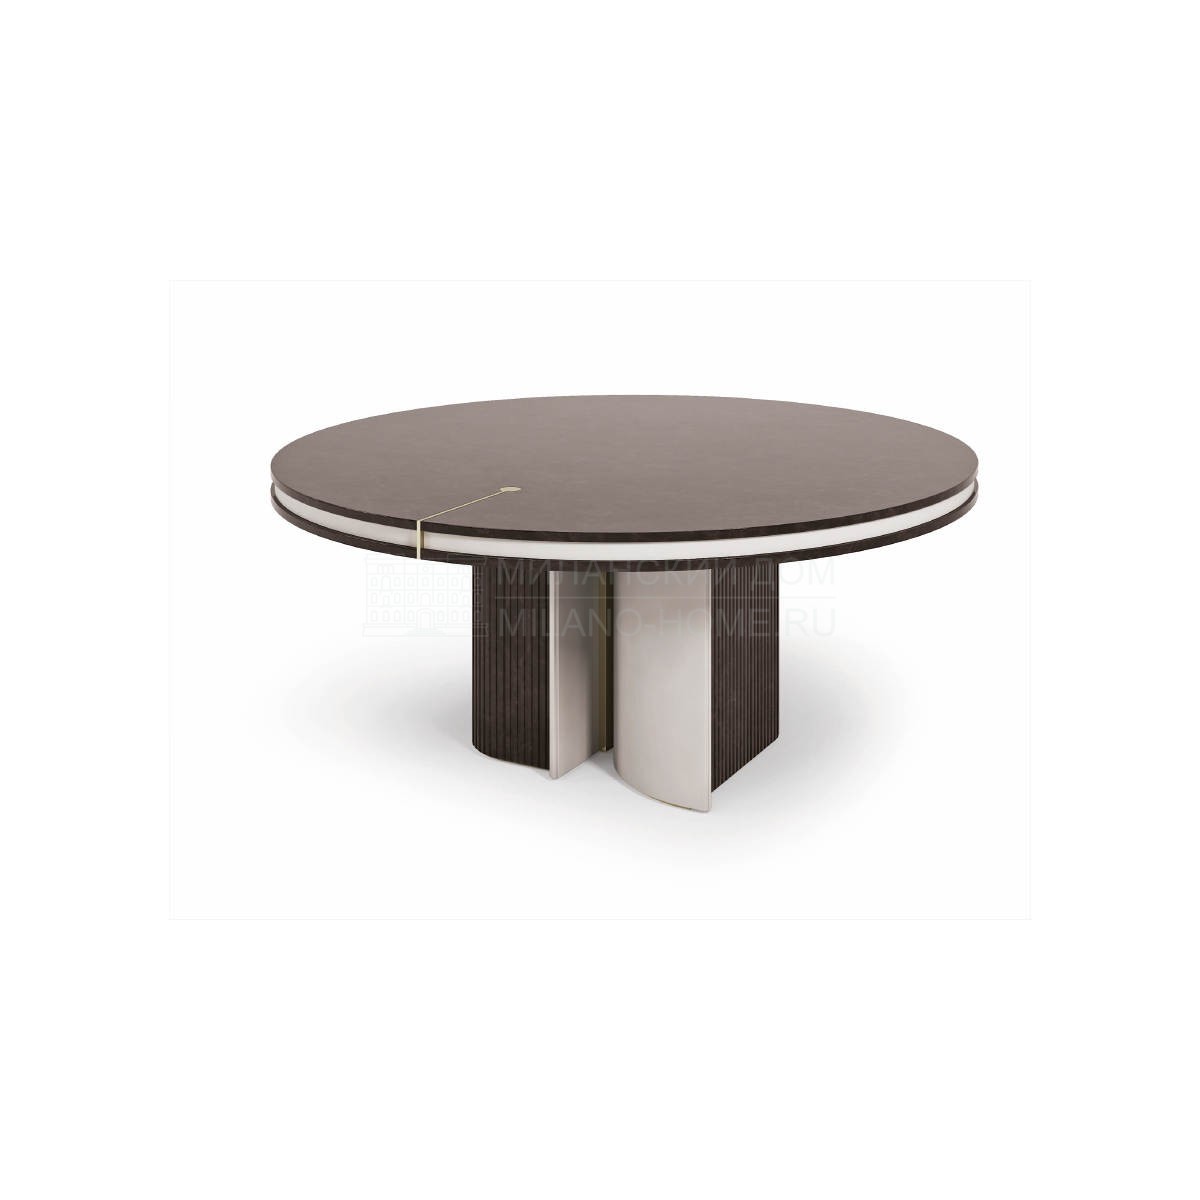 Круглый стол Eclipse round table из Италии фабрики TURRI